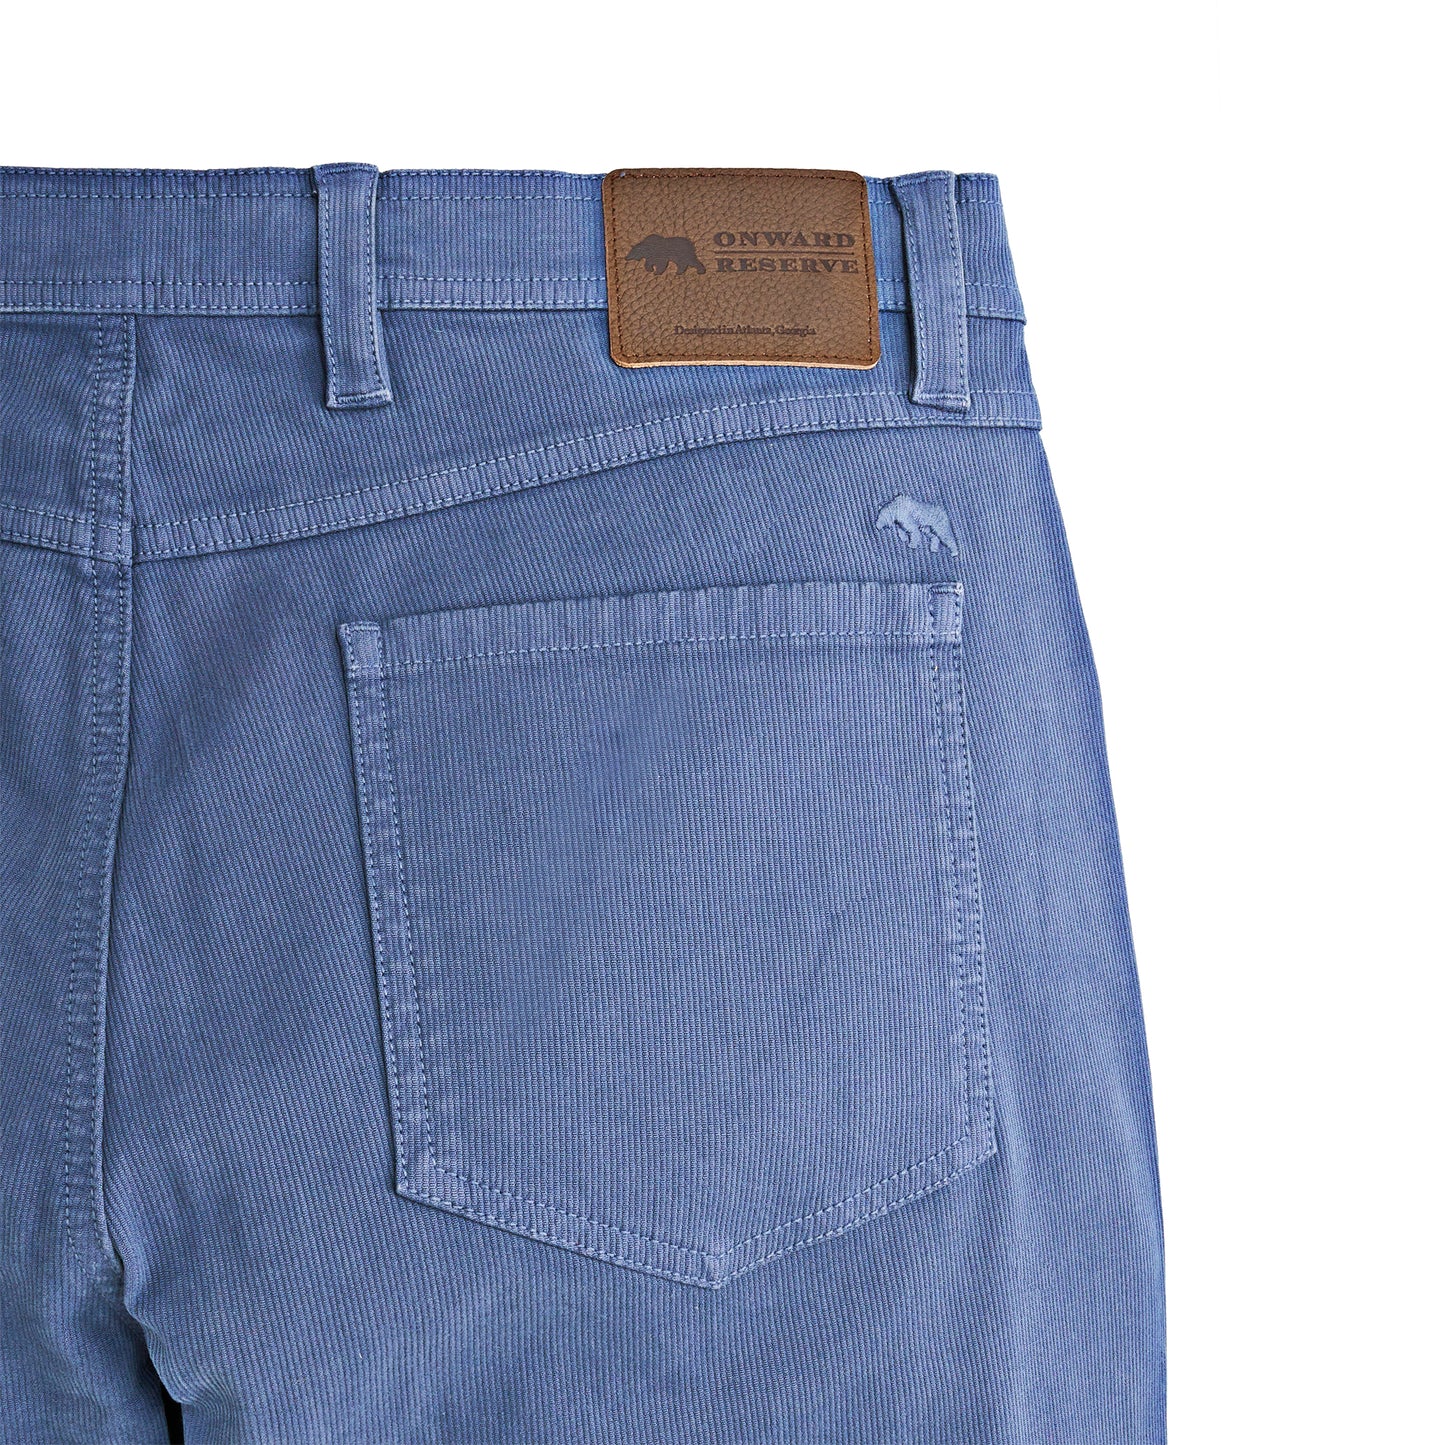 Bedford Five Pocket Pant - Blue Indigo